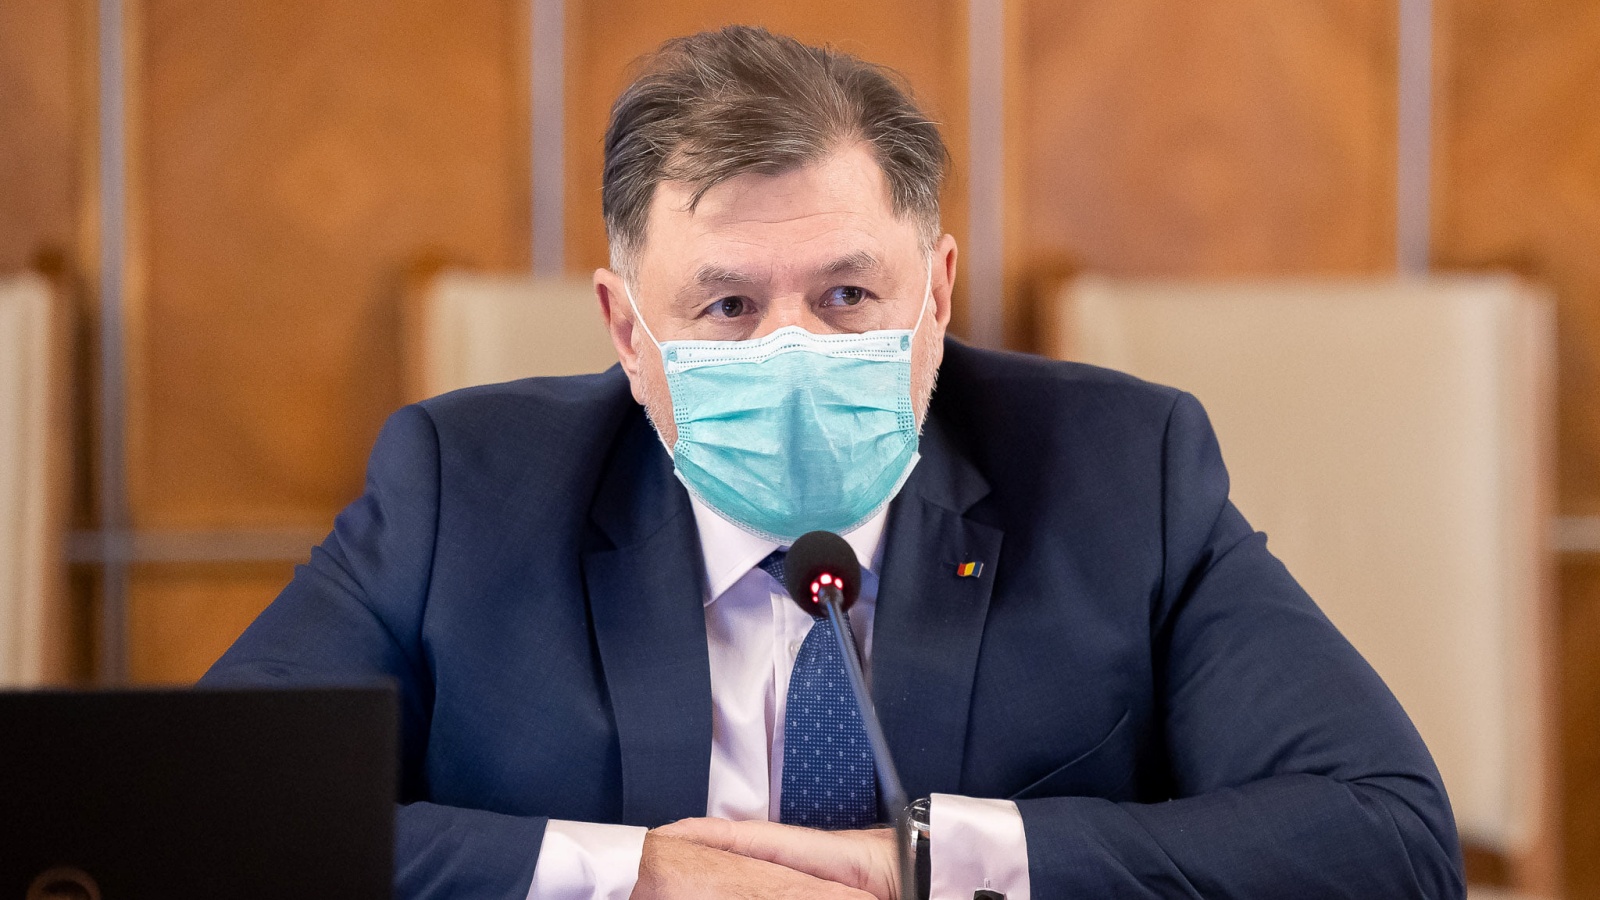 Il Ministro della Sanità annuncia con decisione le decisioni dell'ultimo minuto per milioni di rumeni